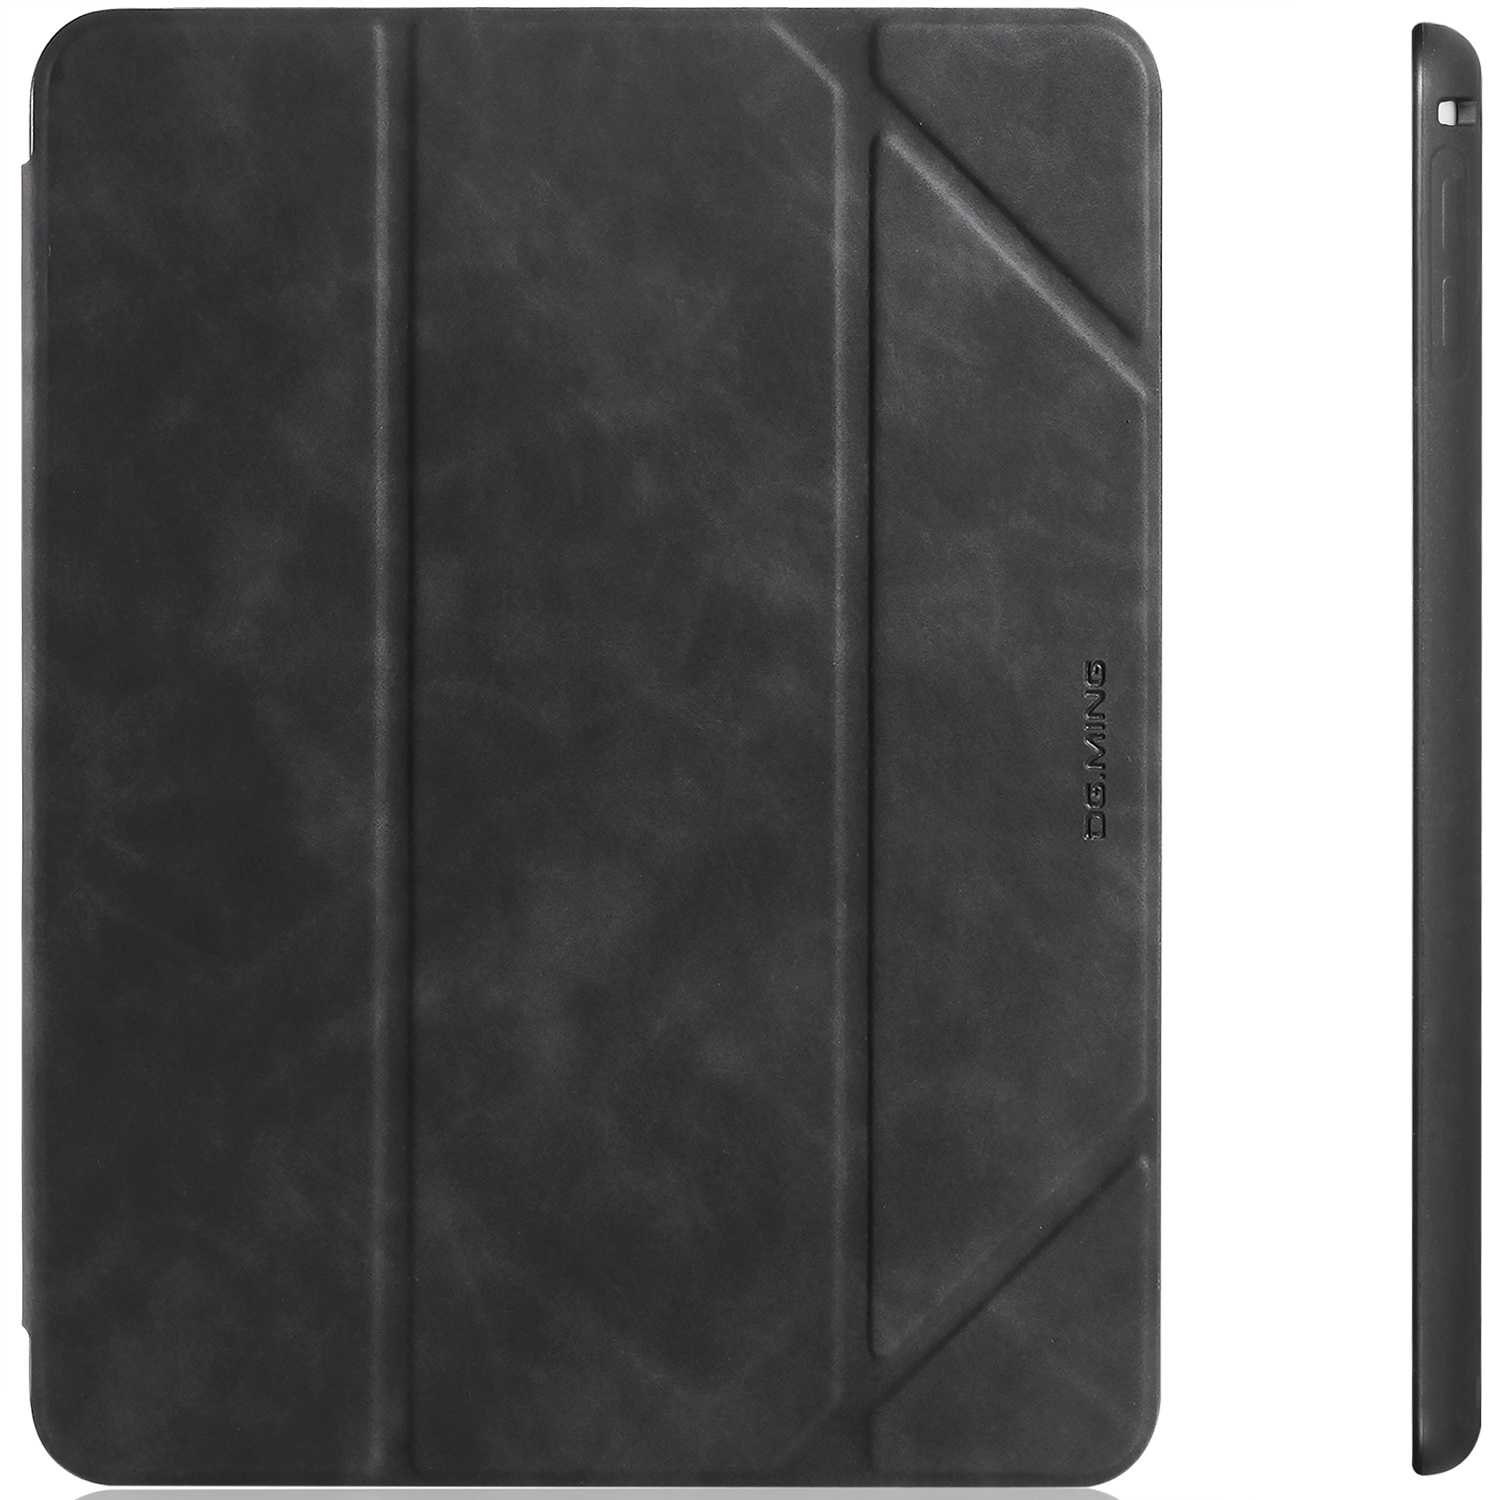 DG.MING Retro Style fodral till iPad Air/Air2 och iPad 9.7, grå